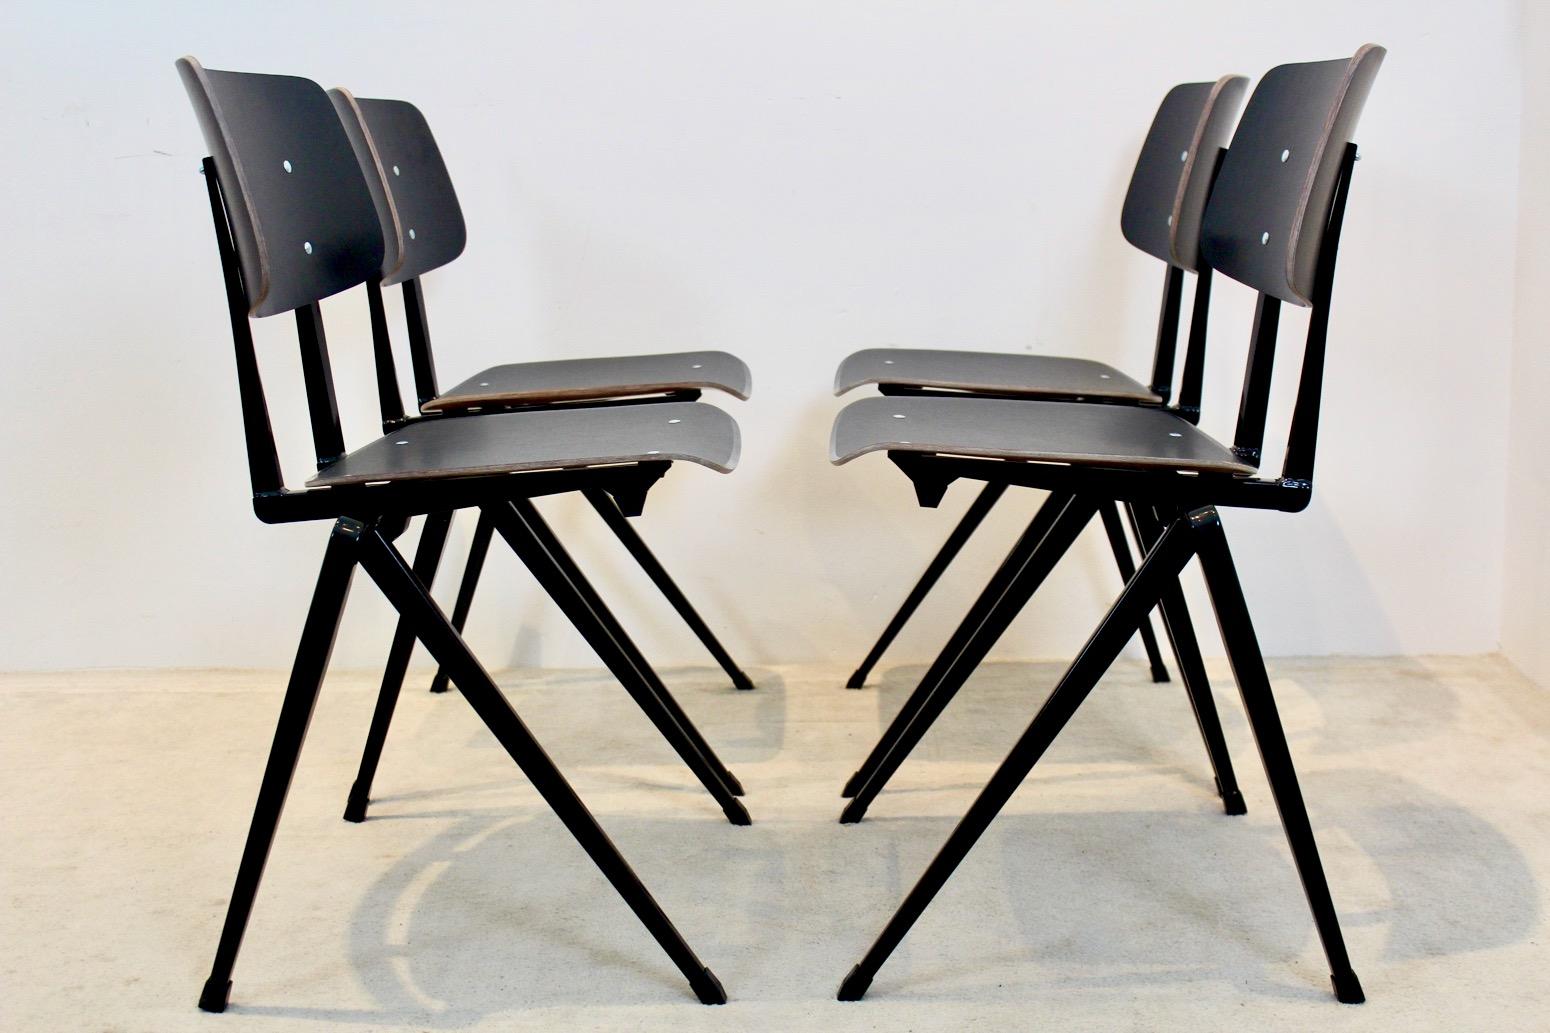 Heiß begehrt, in mehreren Farben und Mengen erhältlich und mit Maßanfertigung: die Stapelstühle Industrial S17 von Galvanitas. Diese Sculptural Stühle sind für optimalen Komfort und hohe Beanspruchung gemacht; die Carbonwood-Sitzteile bestehen aus